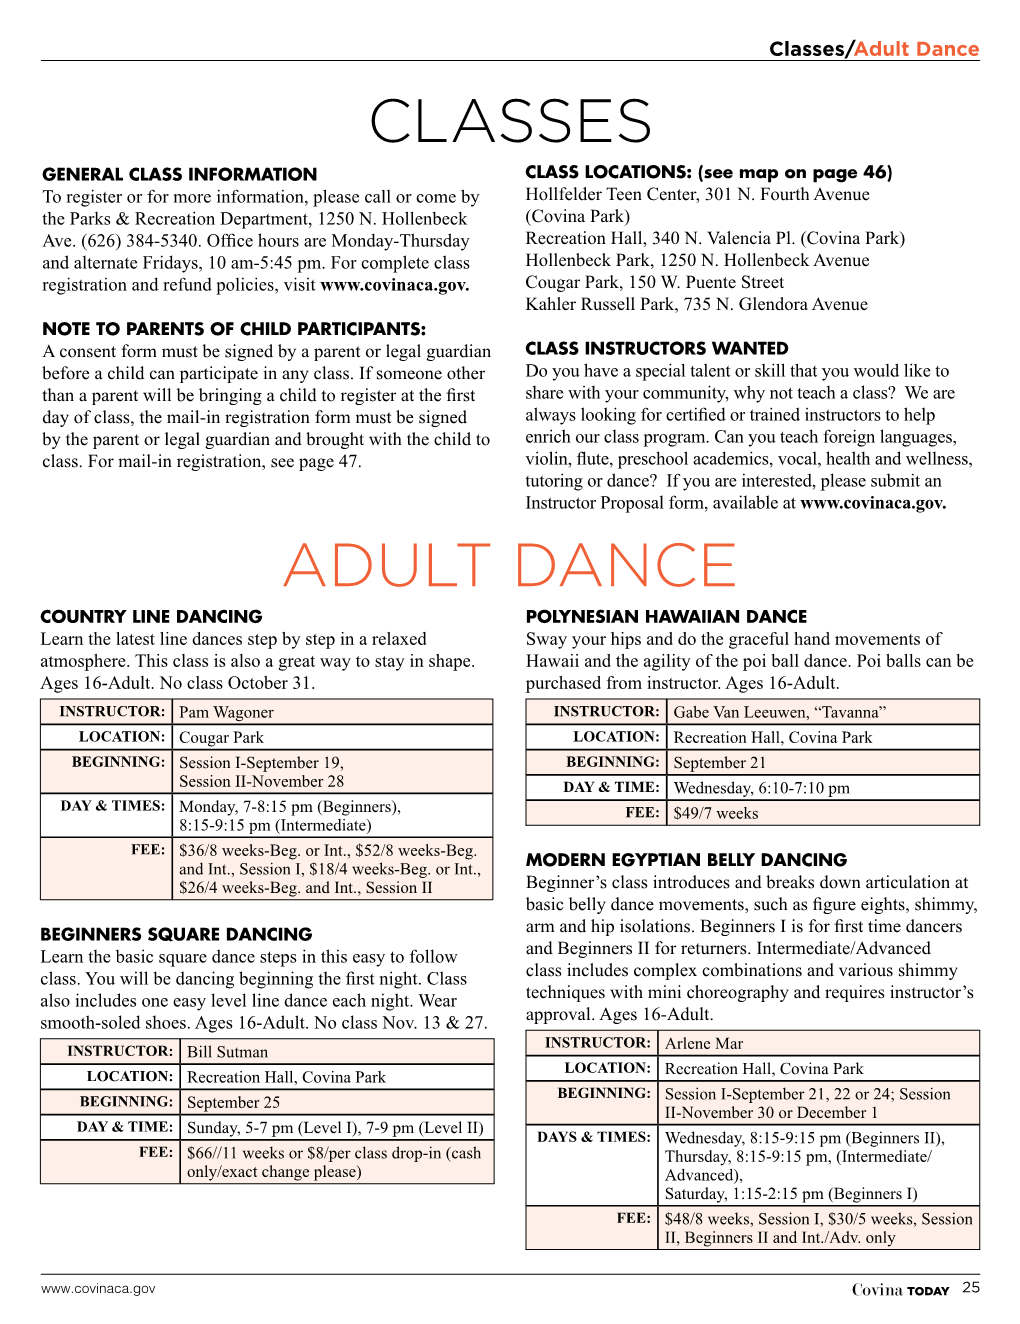 Classes Adult Dance